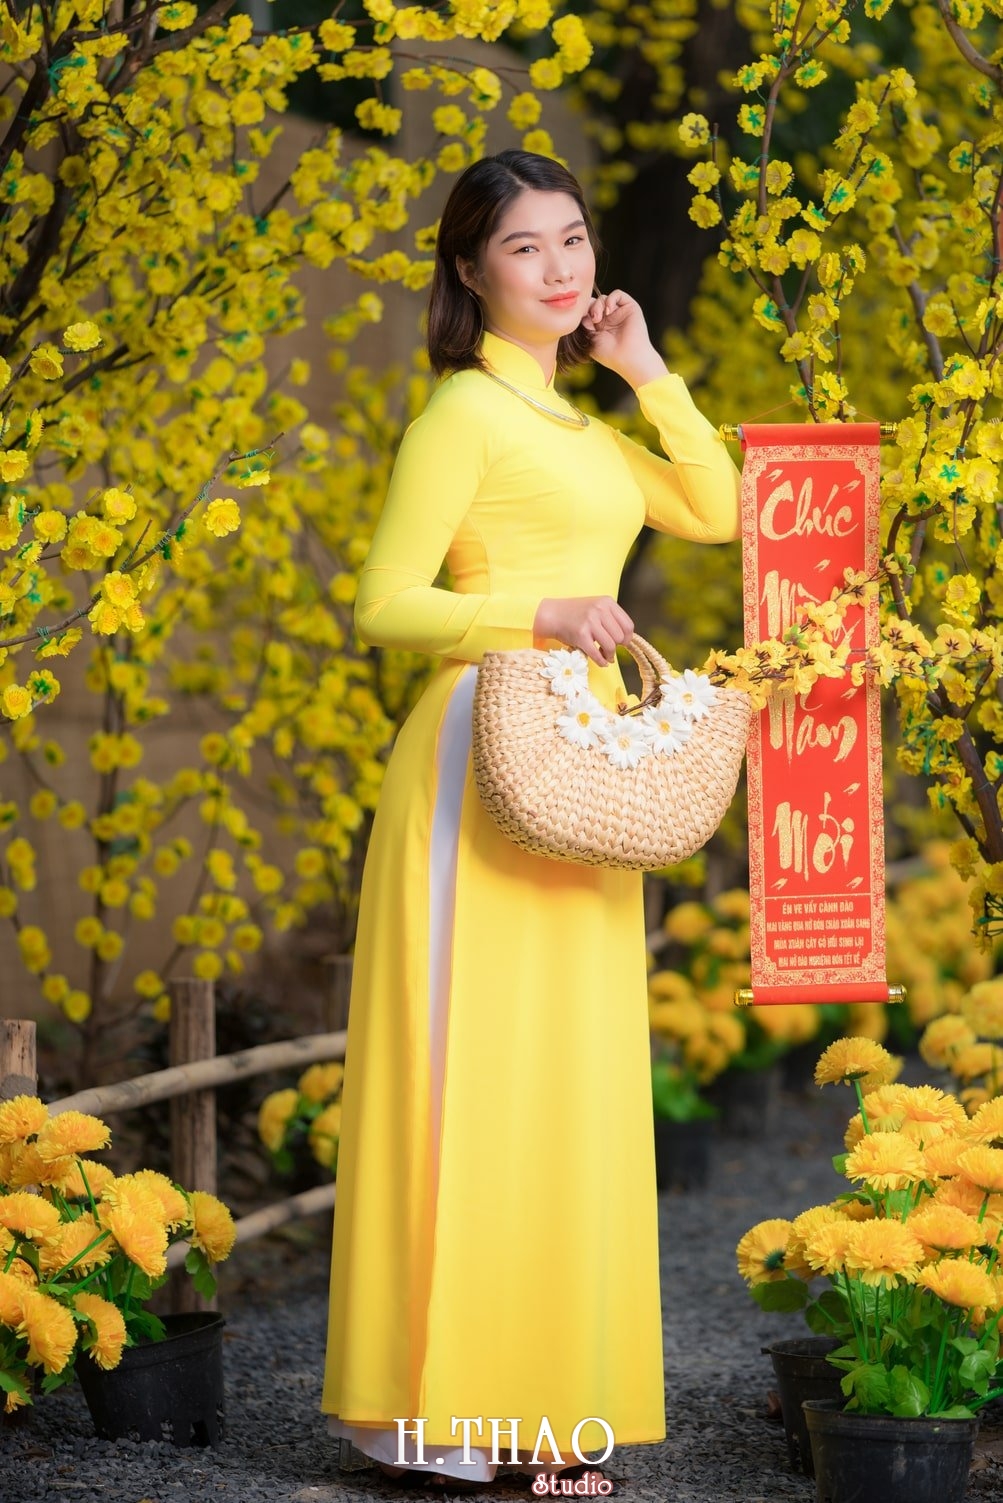 Ao dai tet 4 - Top 40 ảnh áo dài chụp với Hoa đào, hoa mai tết tuyệt đẹp- HThao Studio